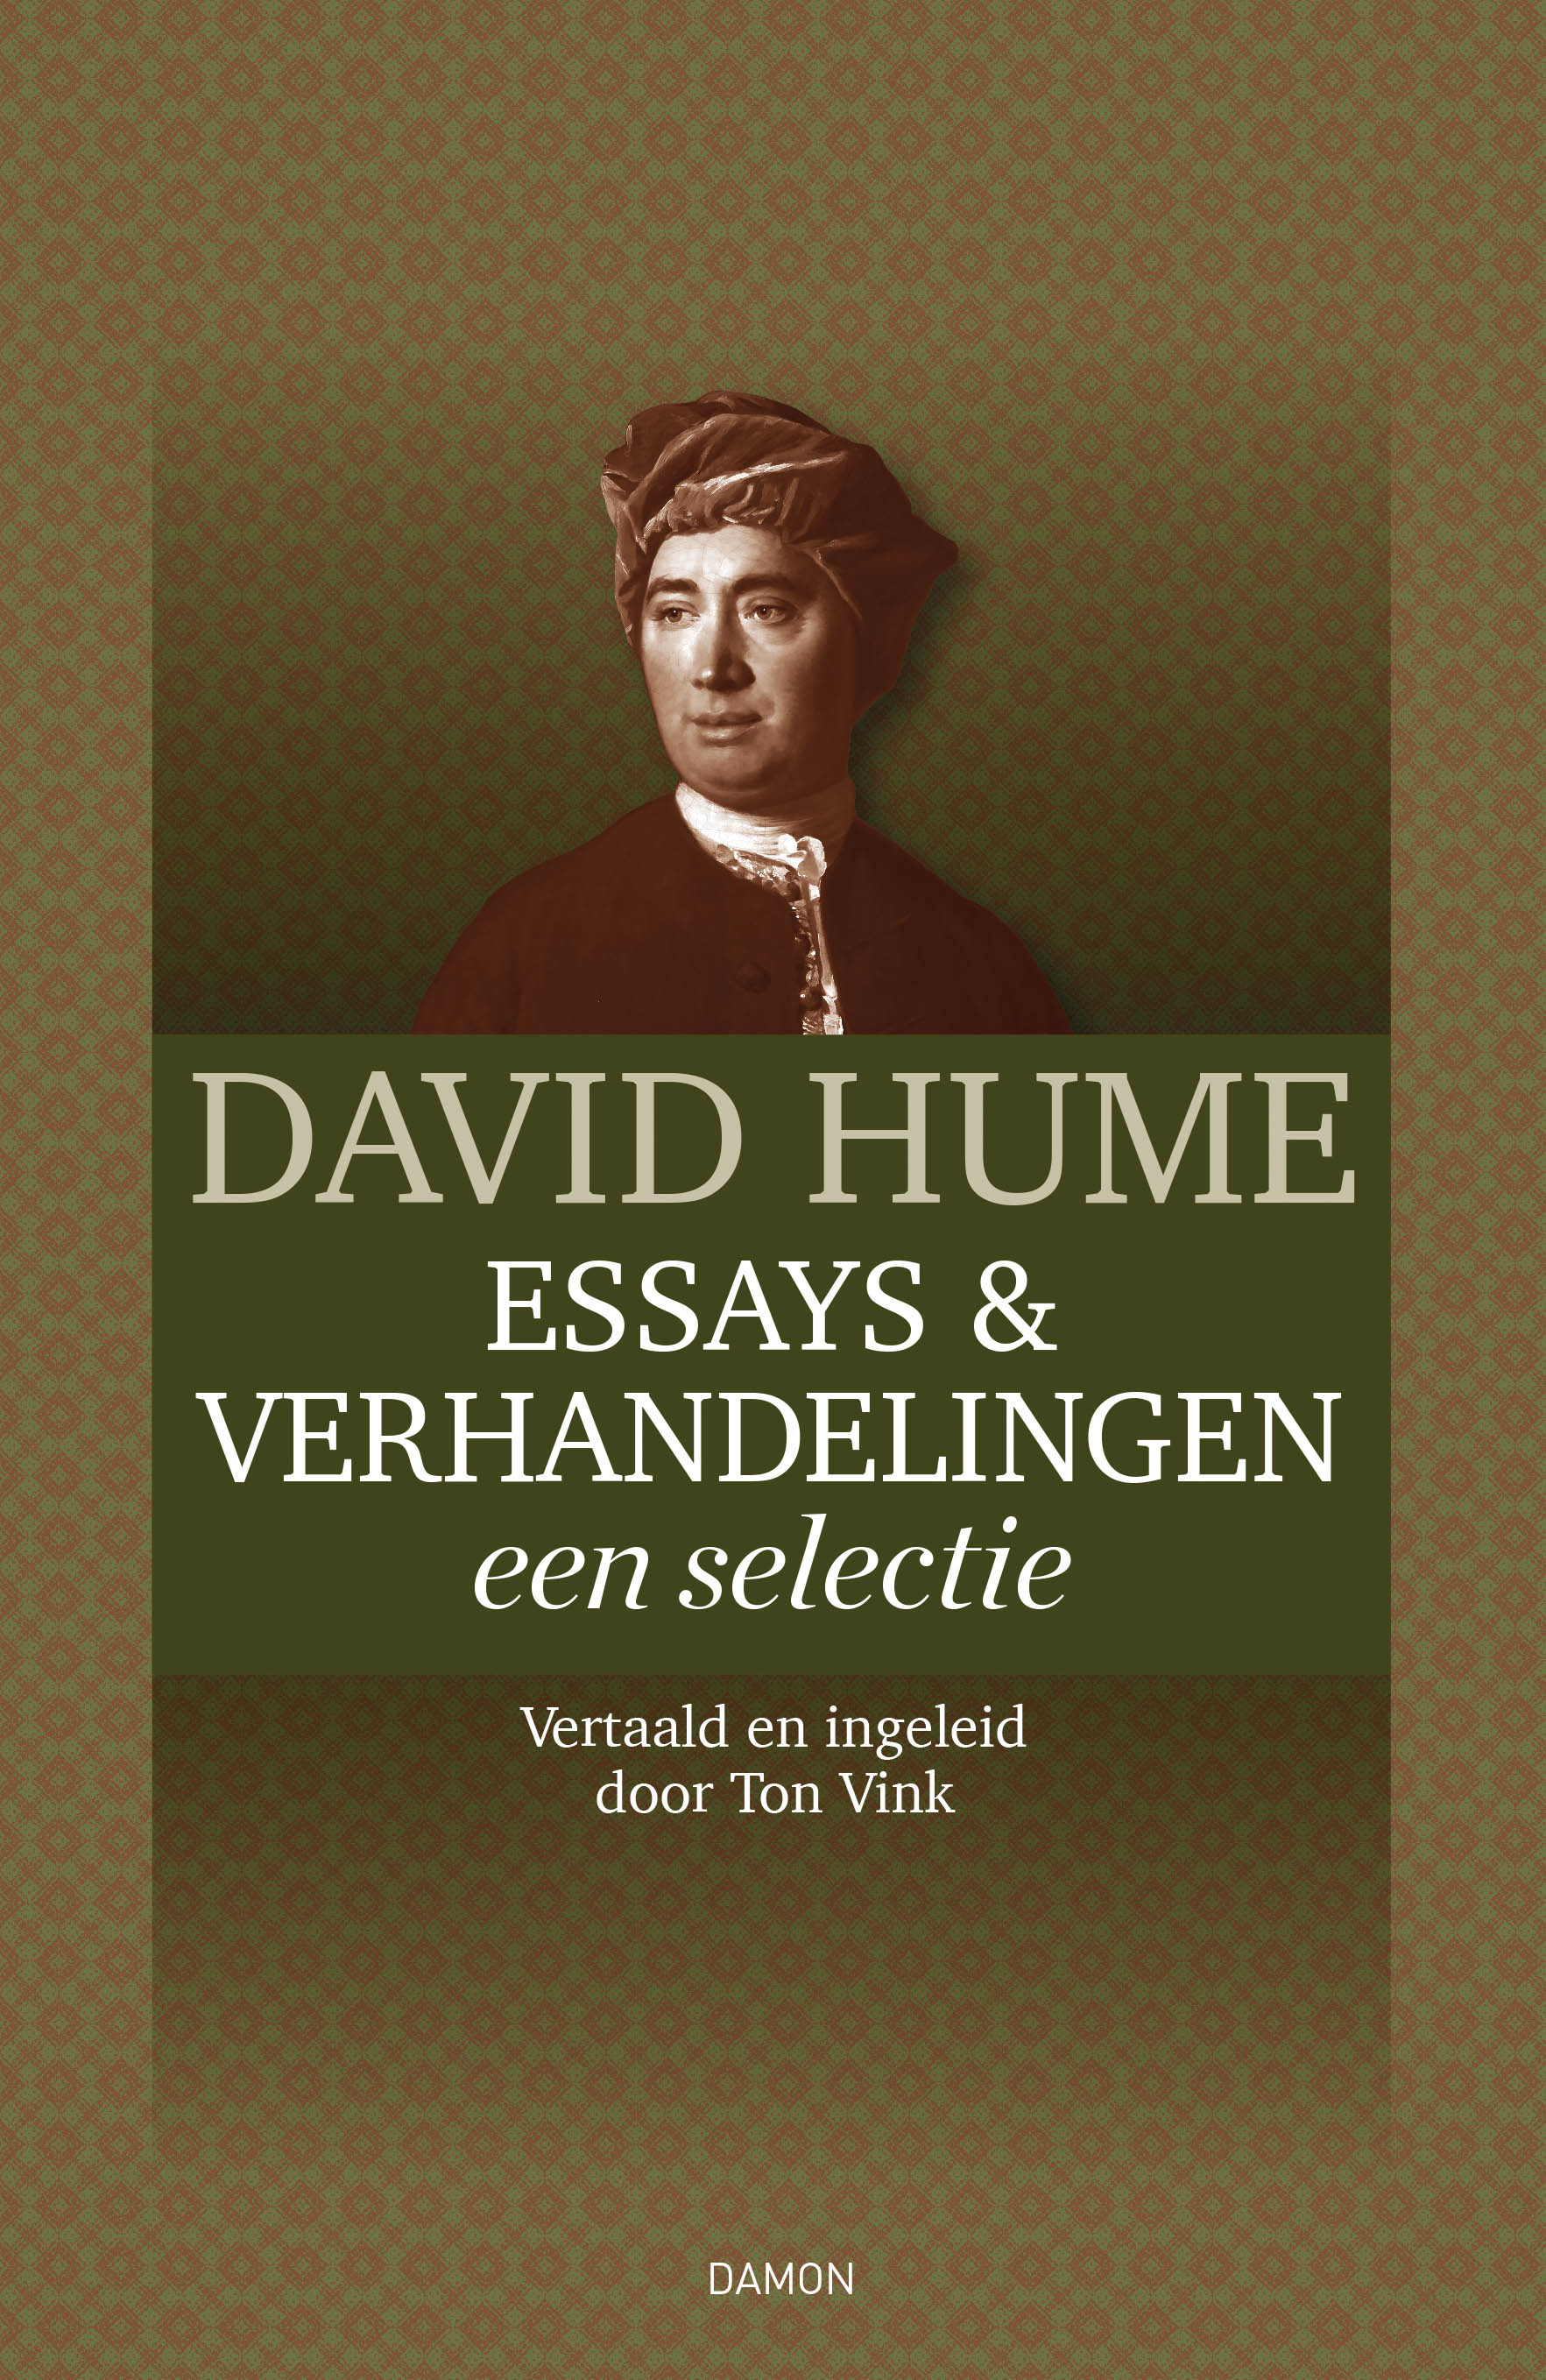 David Hume, Essays & Verhandelingen